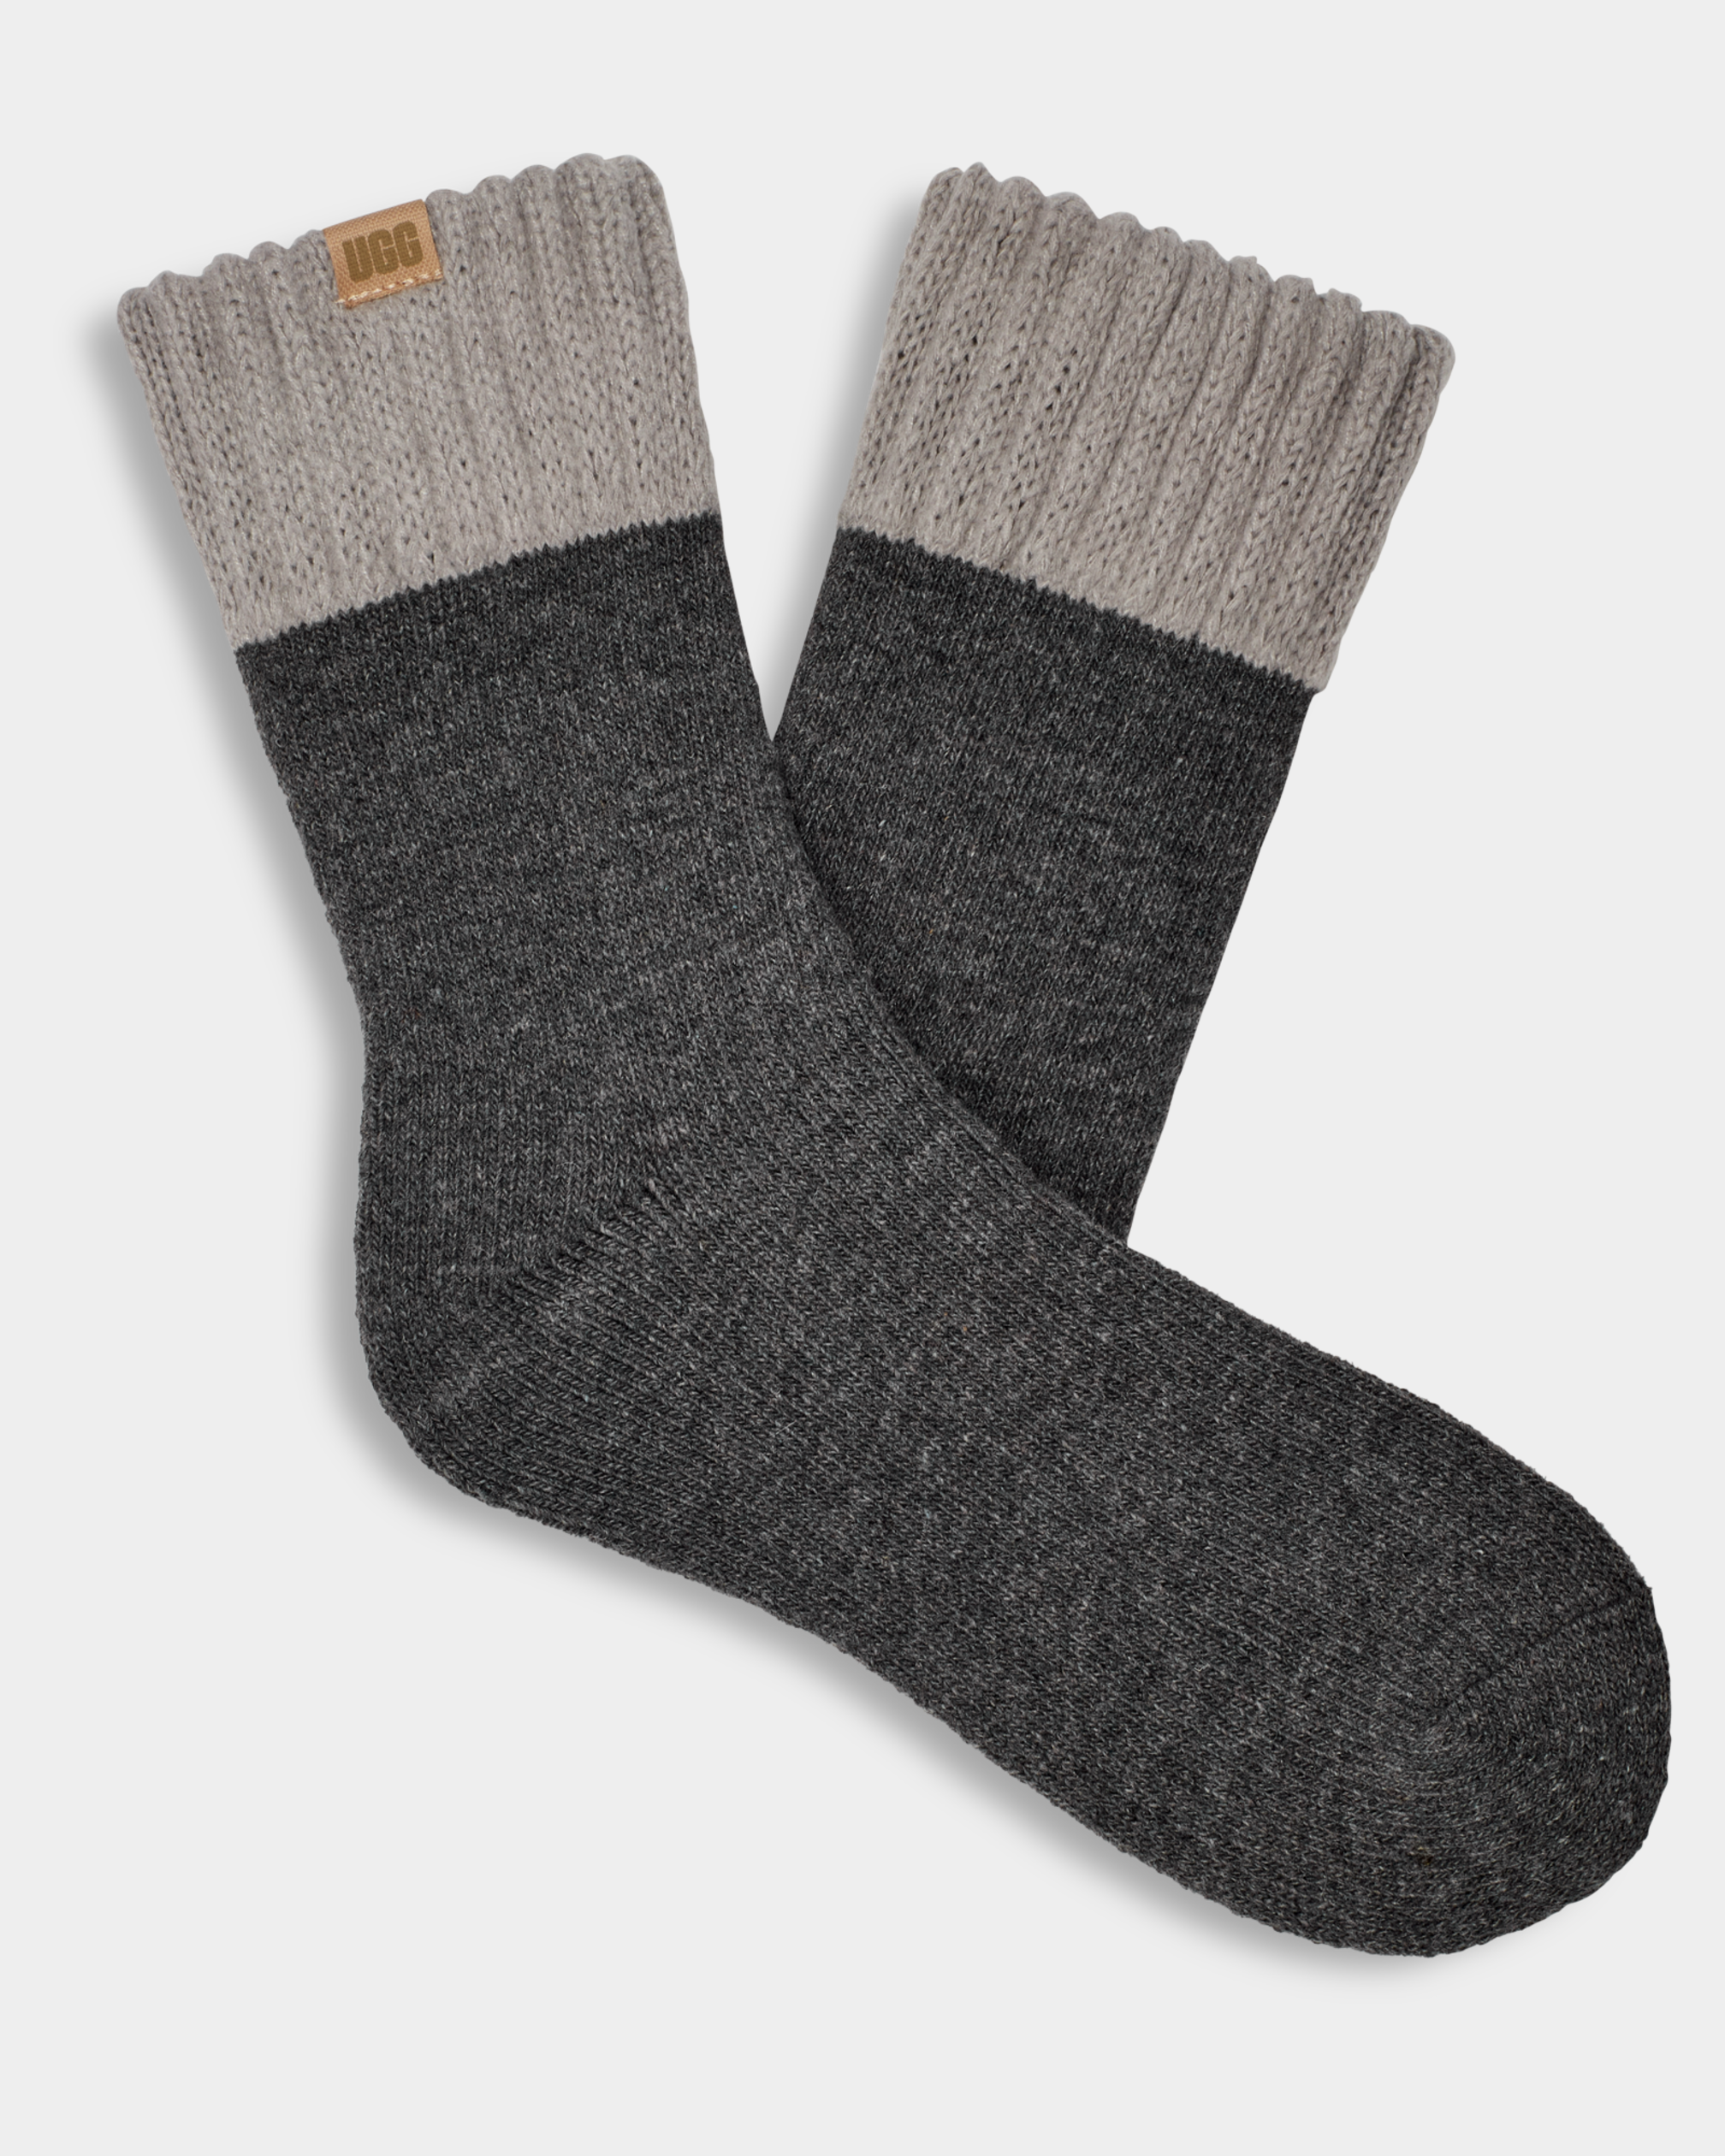 Slouch Wool Socks, Plus Size for Men Wide Feet, Gift for Elderly 